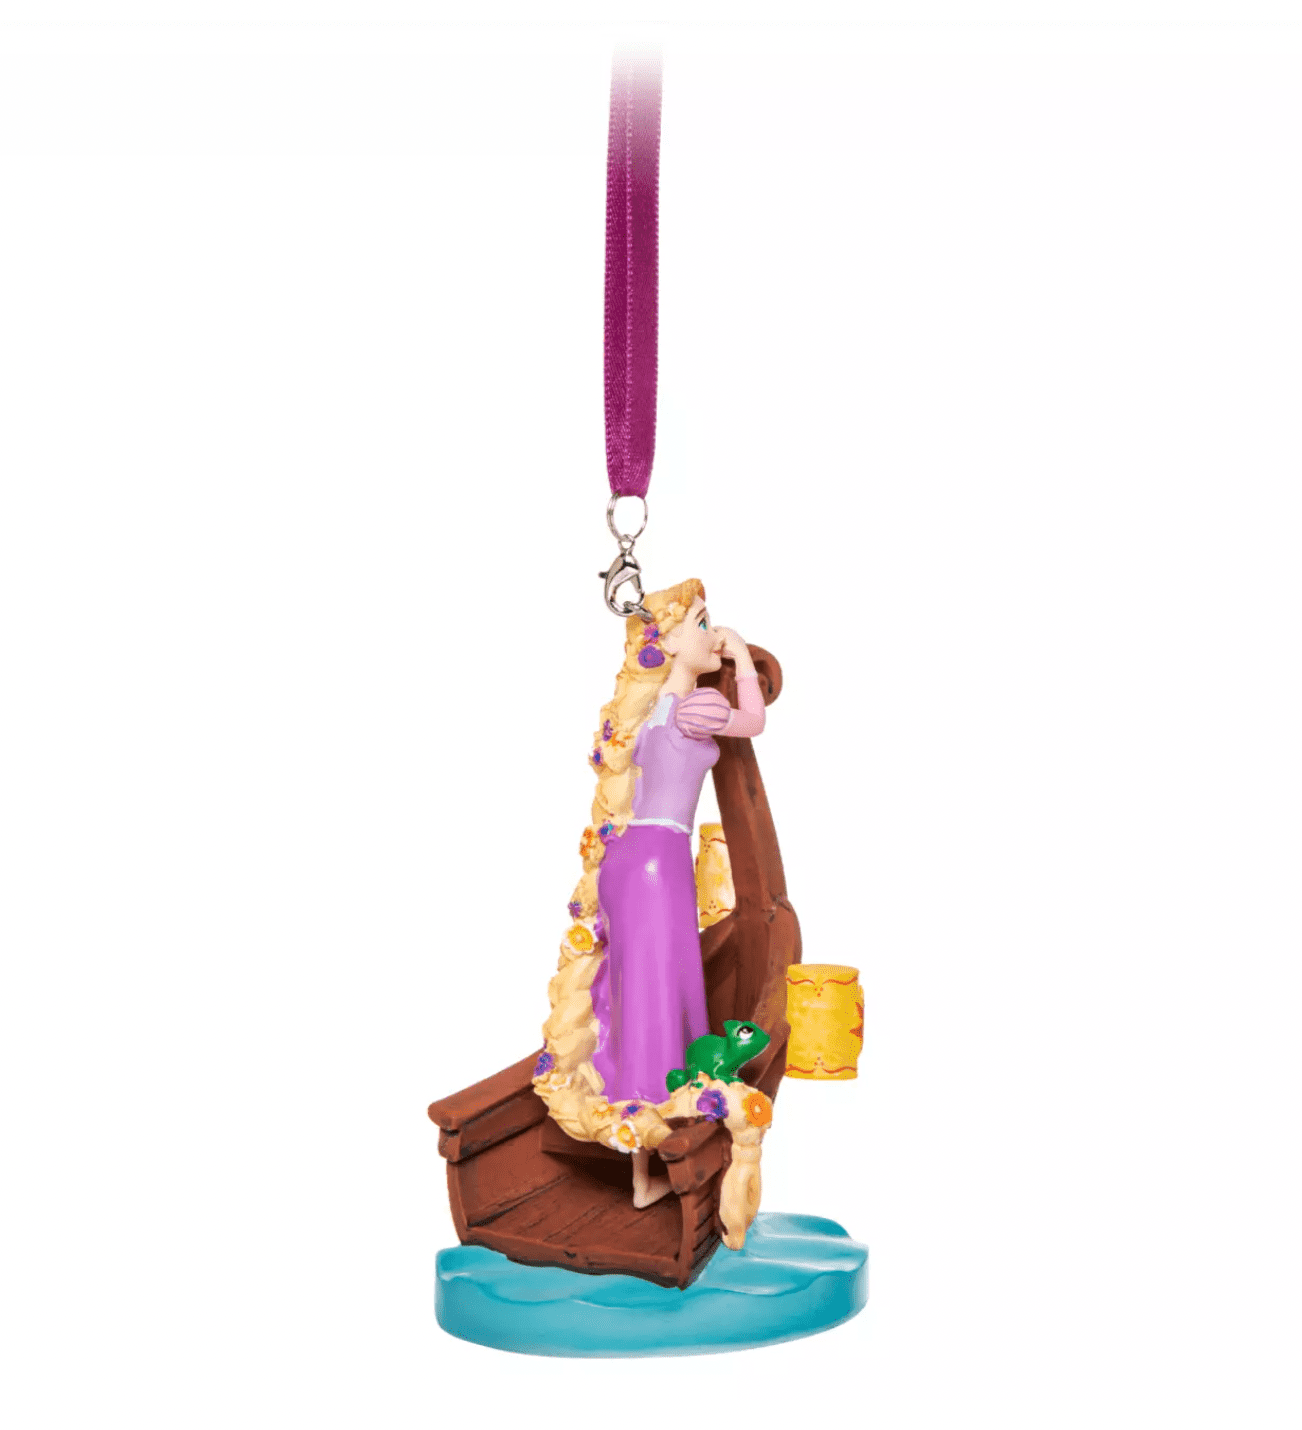 Disney Sketchbook Ornament - Rapunzel - Tangled